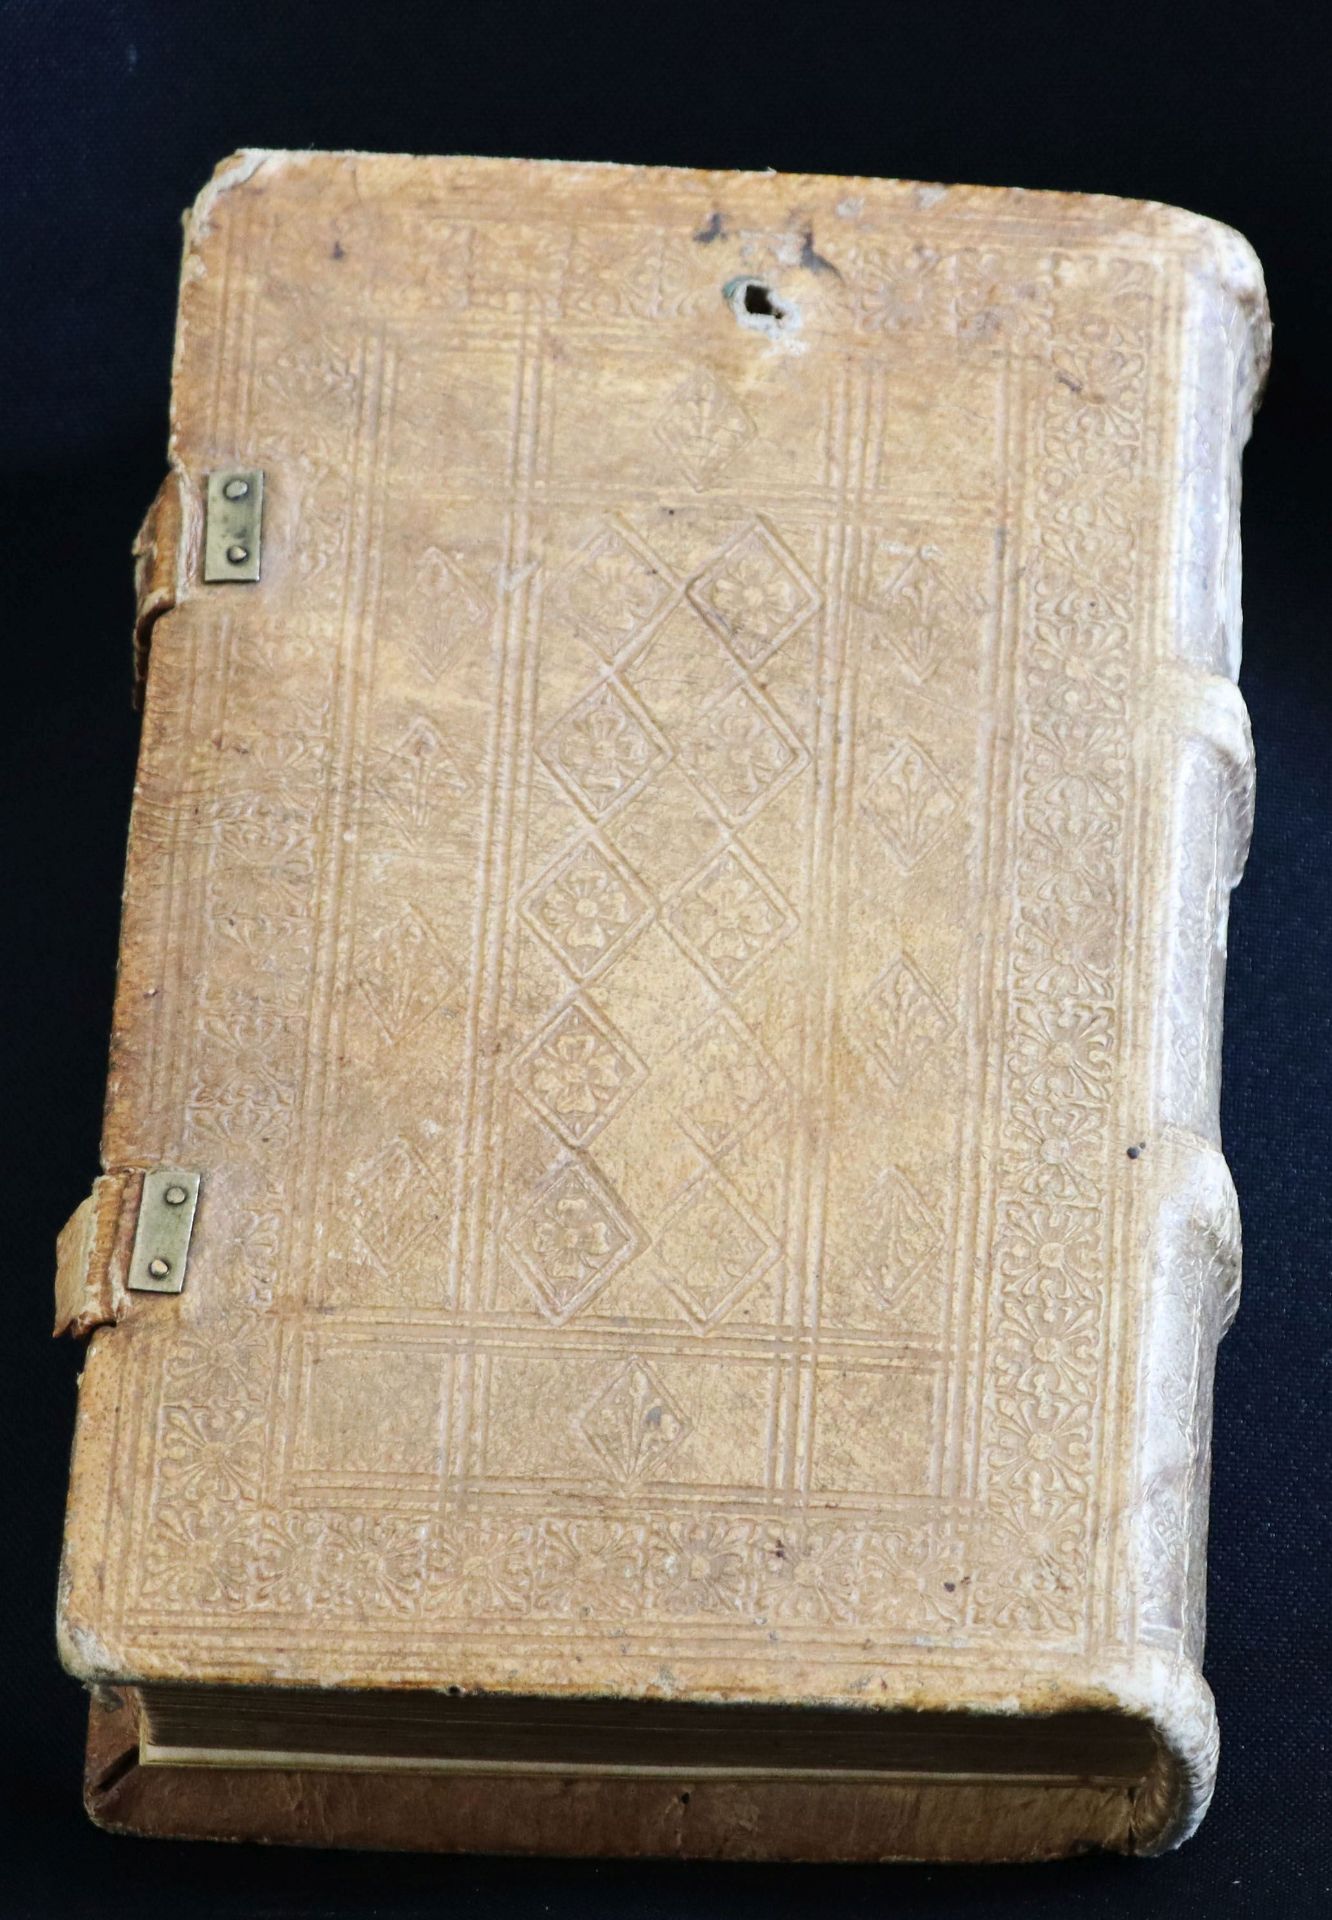 Ovidius Naso, P. Fastorum libri VI. De tristibus libri V. De ponto libri IIII. Venedig, Aldus, 17. - Image 3 of 8